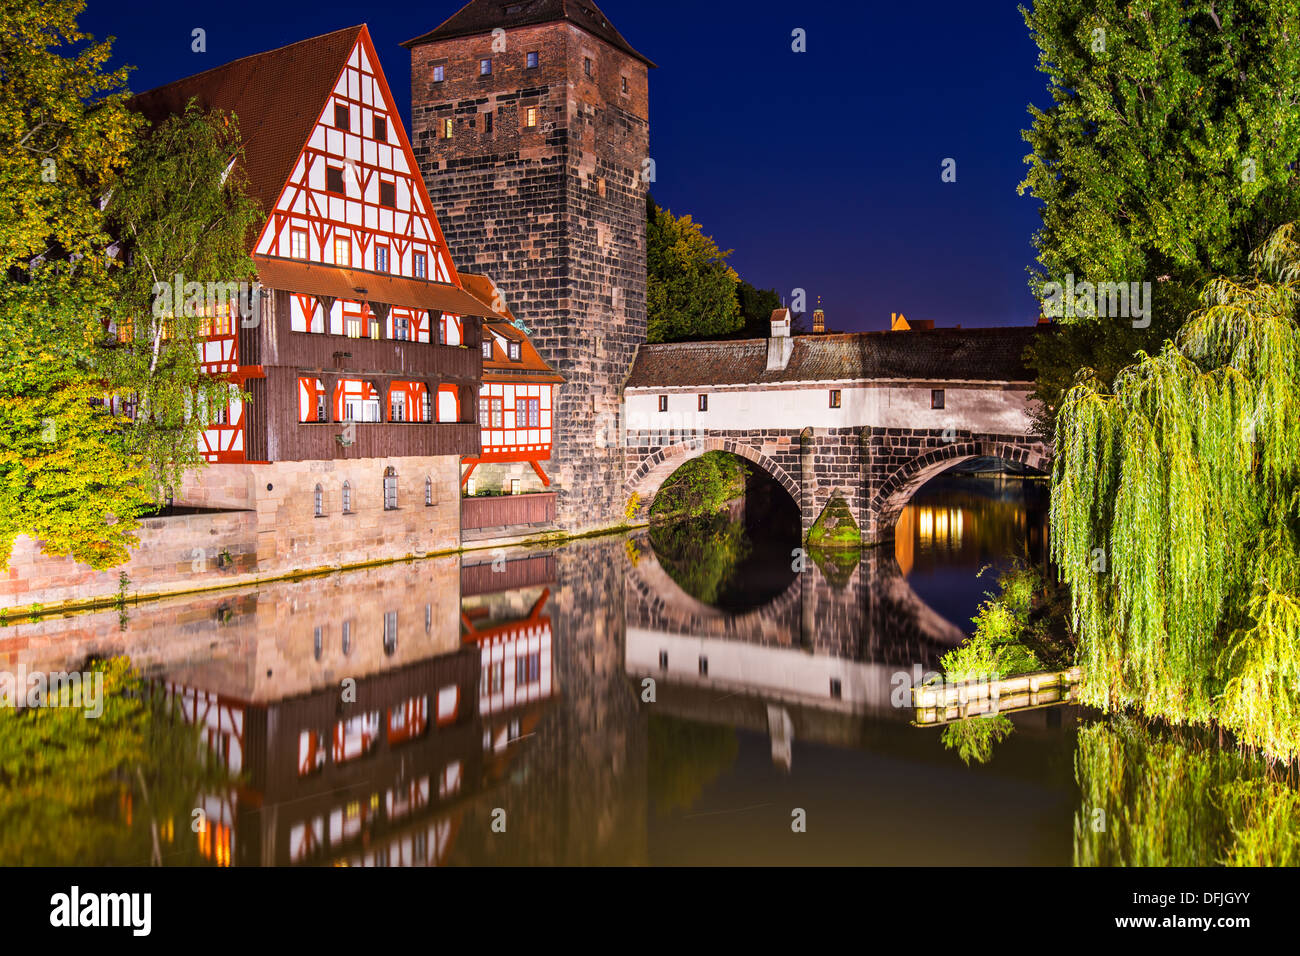 Pont du bourreau de nuit, Nuremberg, Allemagne Banque D'Images